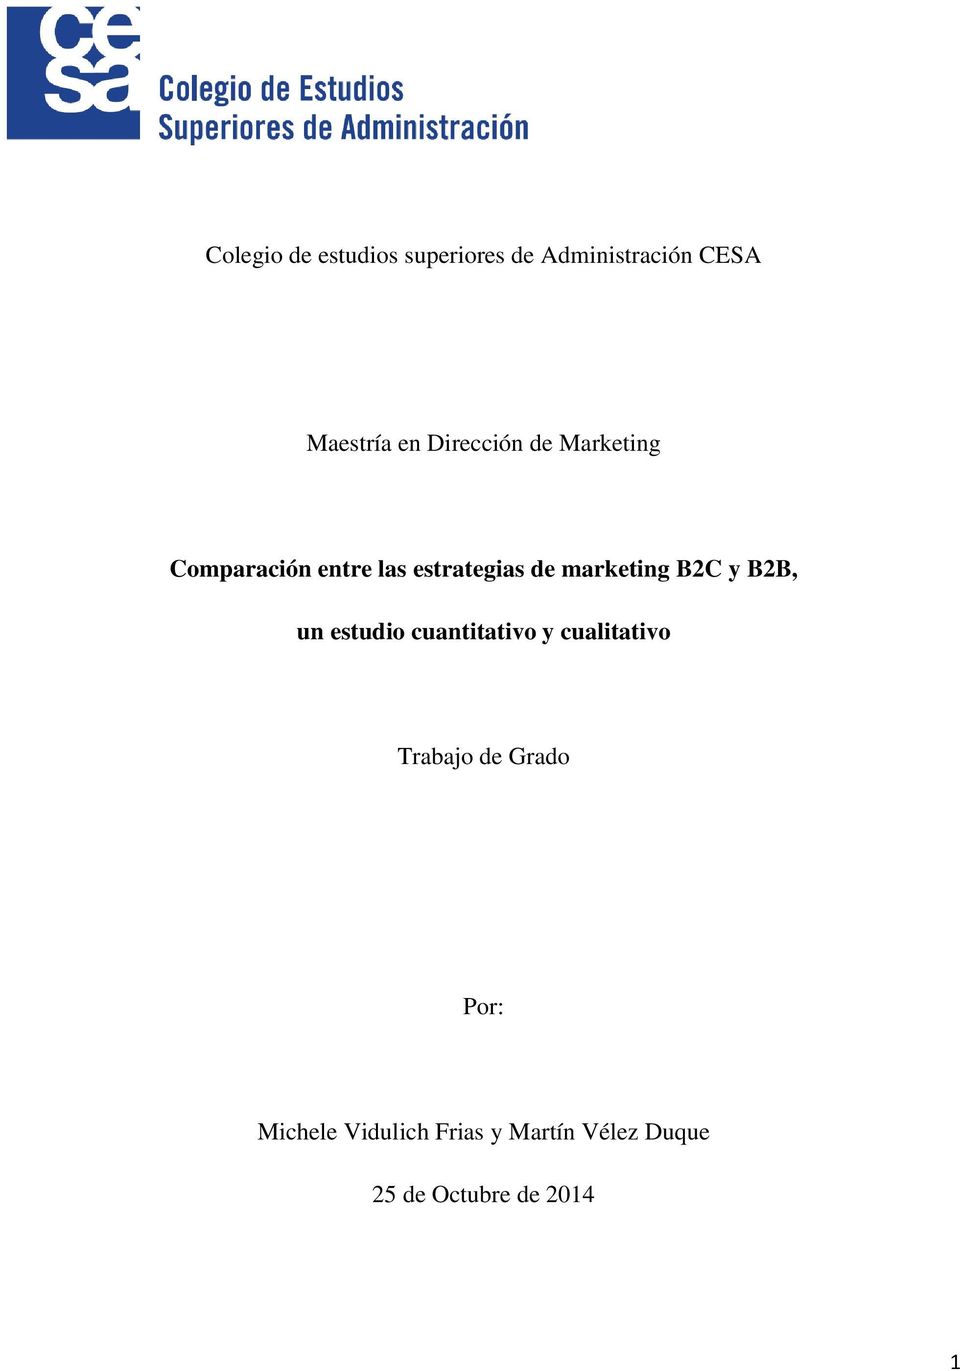 marketing B2C y B2B, un estudio cuantitativo y cualitativo Trabajo